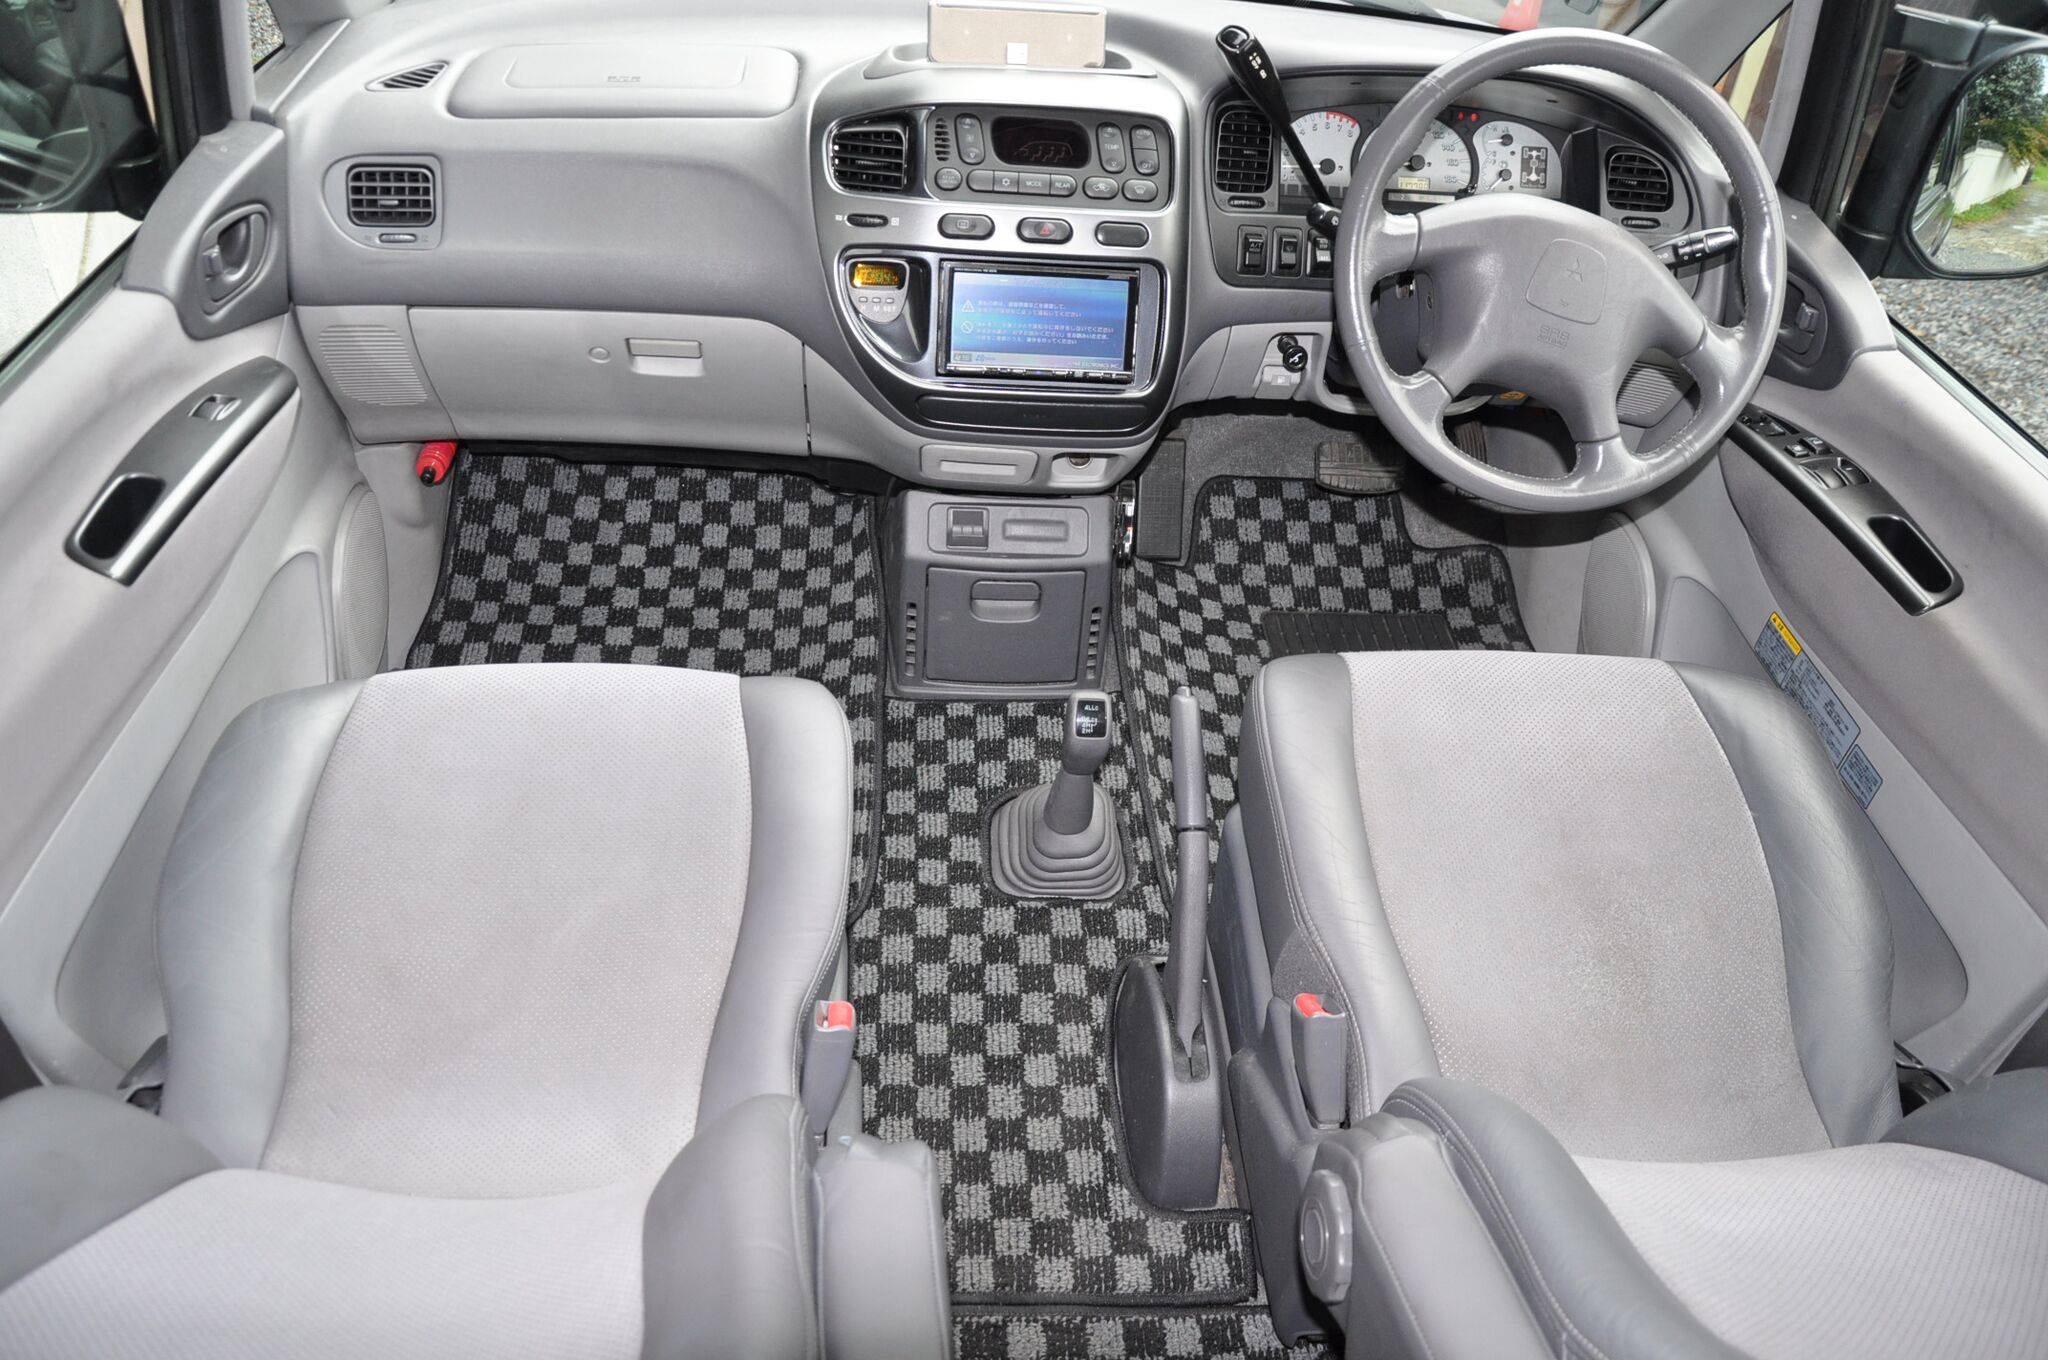 Mitsubishi Delica for sale fully UK registered